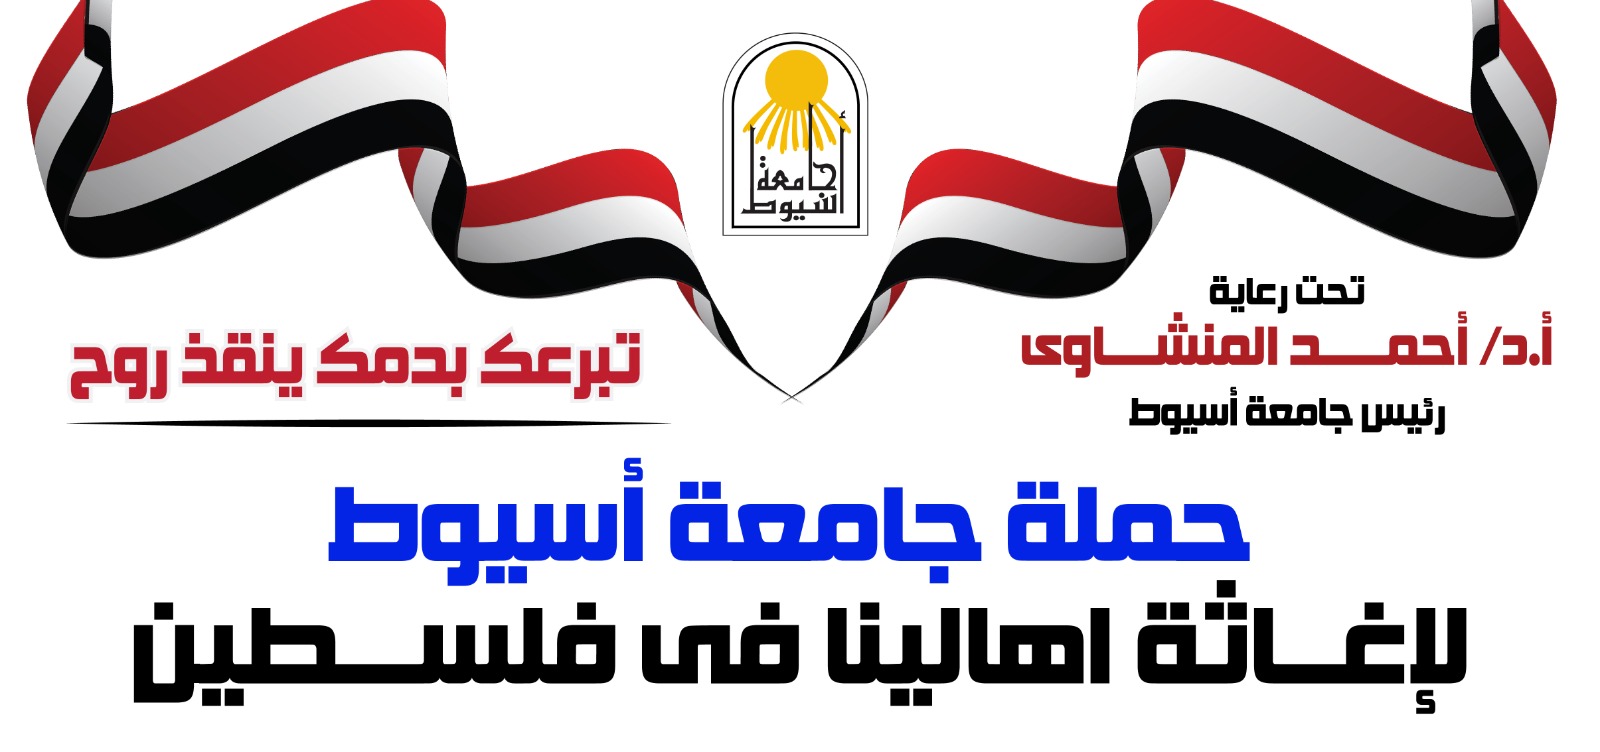 تحت رعاية الاستاذ الدكتور احمد المنشاوى رئيس الجامعة  حملة التبرع بالدم  غدا من الساعة التاسعة صباحا امام القرية الأولمبية